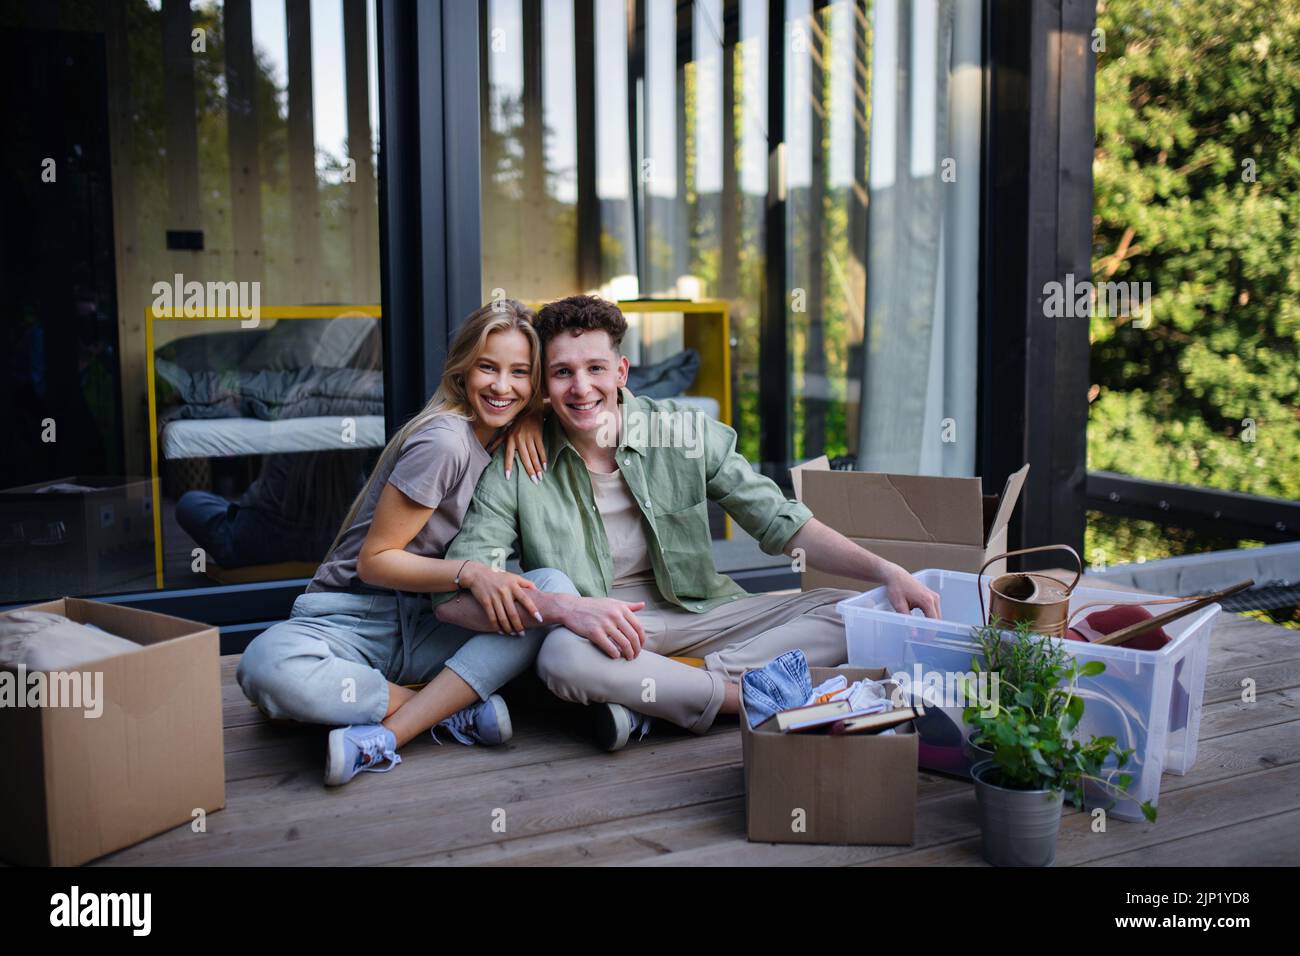 Alegre joven pareja mudarse en su nueva y diminuta casa en el bosque sentado en el suelo en la terraza. Concepción del movimiento y la vida sostenible. Foto de stock